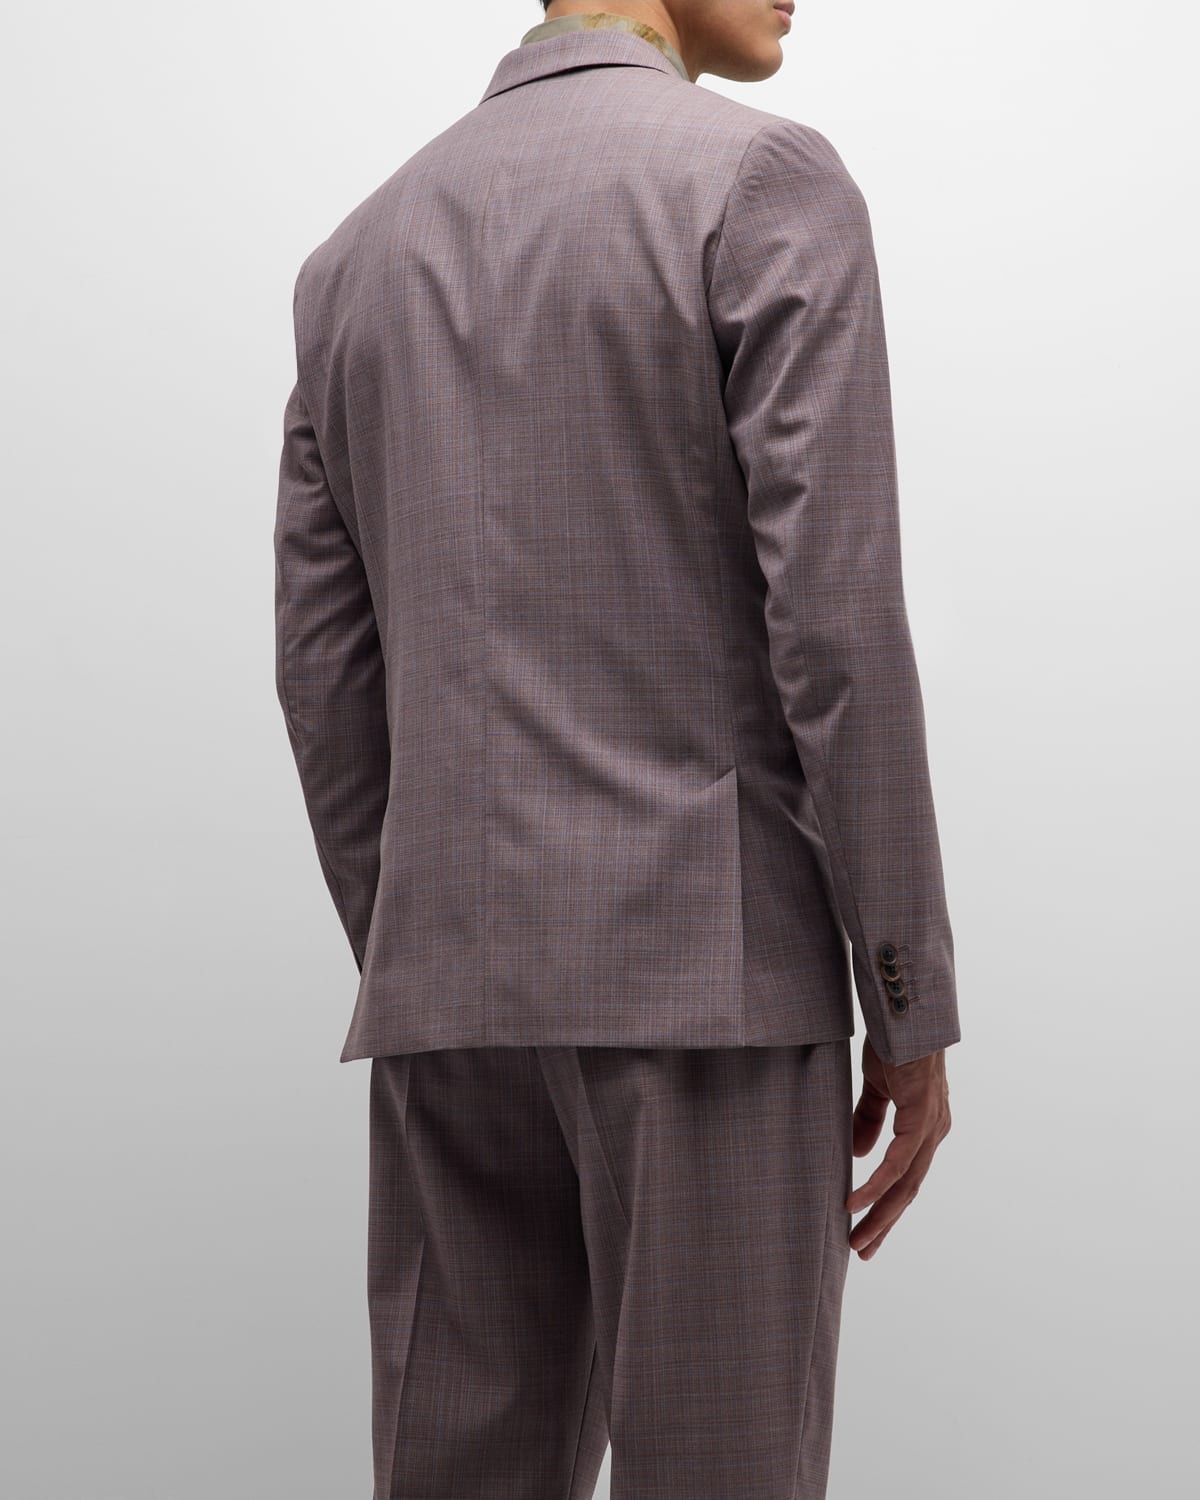 Men's Melange Plaid Suit - 5